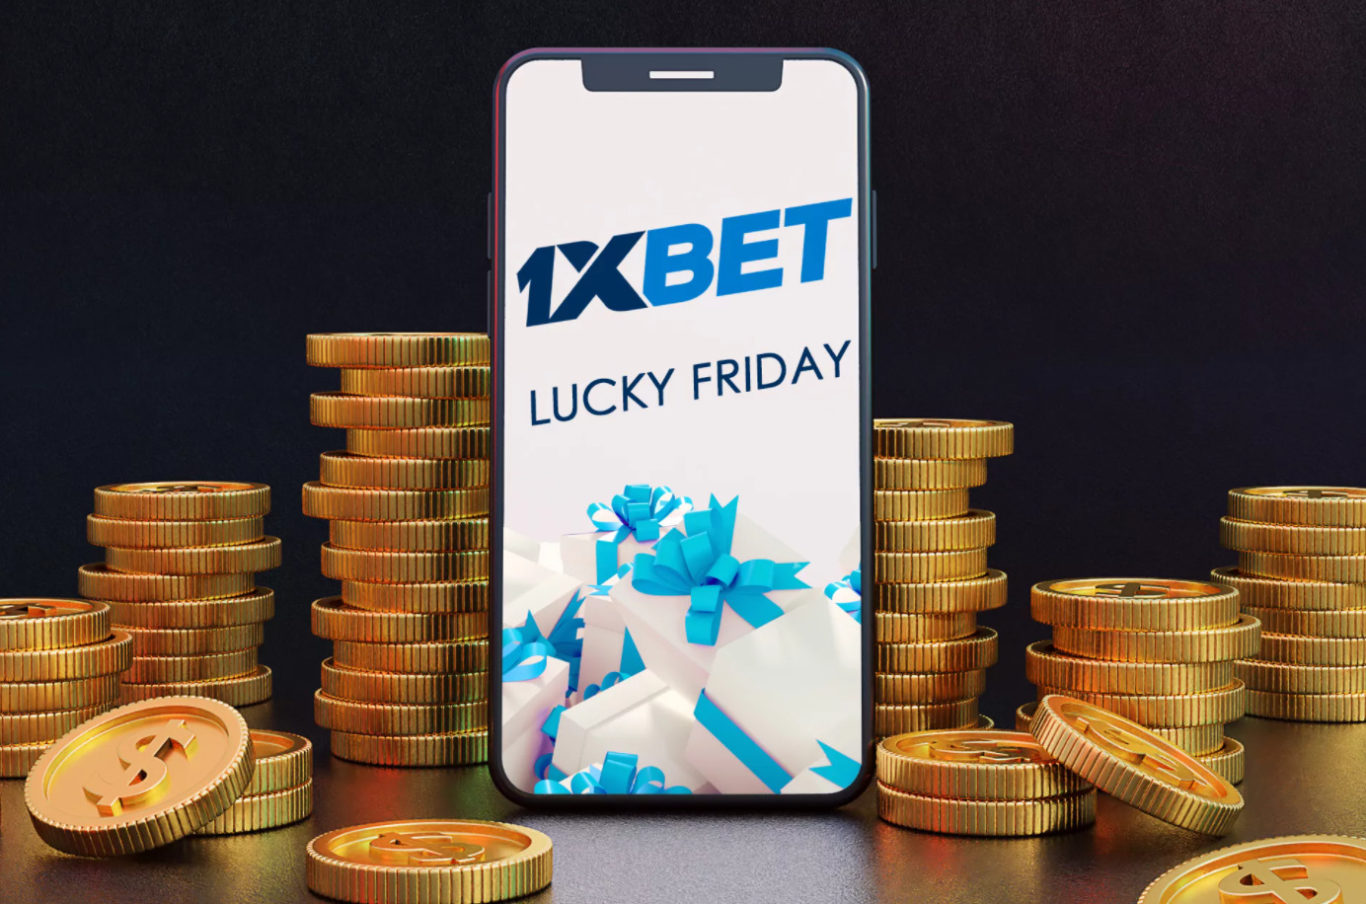 Comment réclamer vos gains du bonus Lucky Friday 1xBet ?